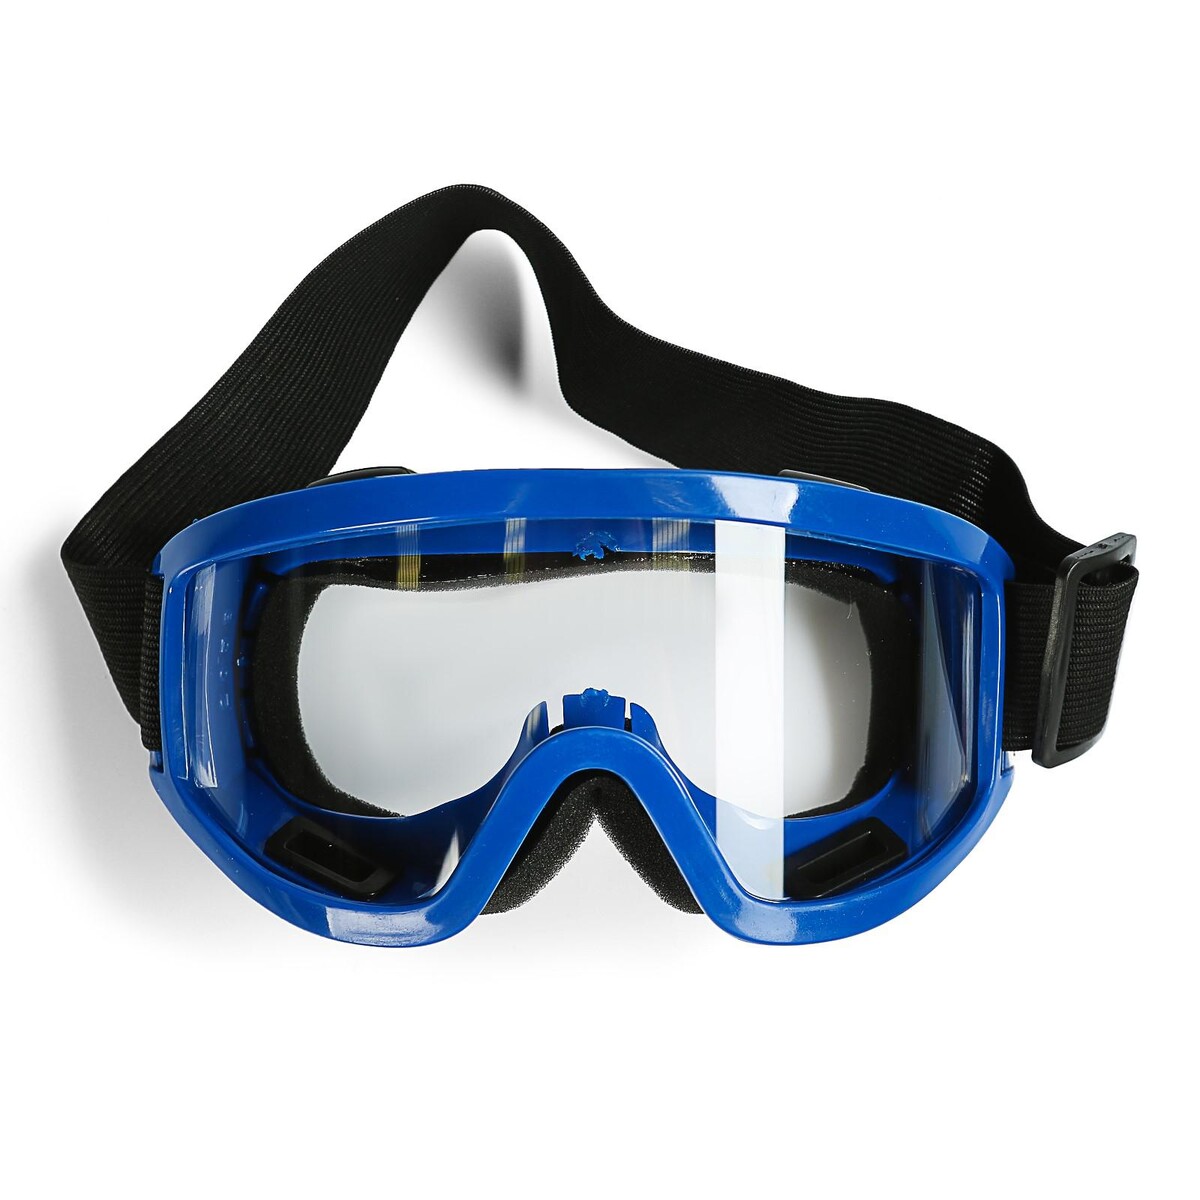 Очки-маска для езды на мототехнике, стекло прозрачное, цвет синий очки маска для езды на мототехнике стекло синий хамелеон желтый белый ом 1